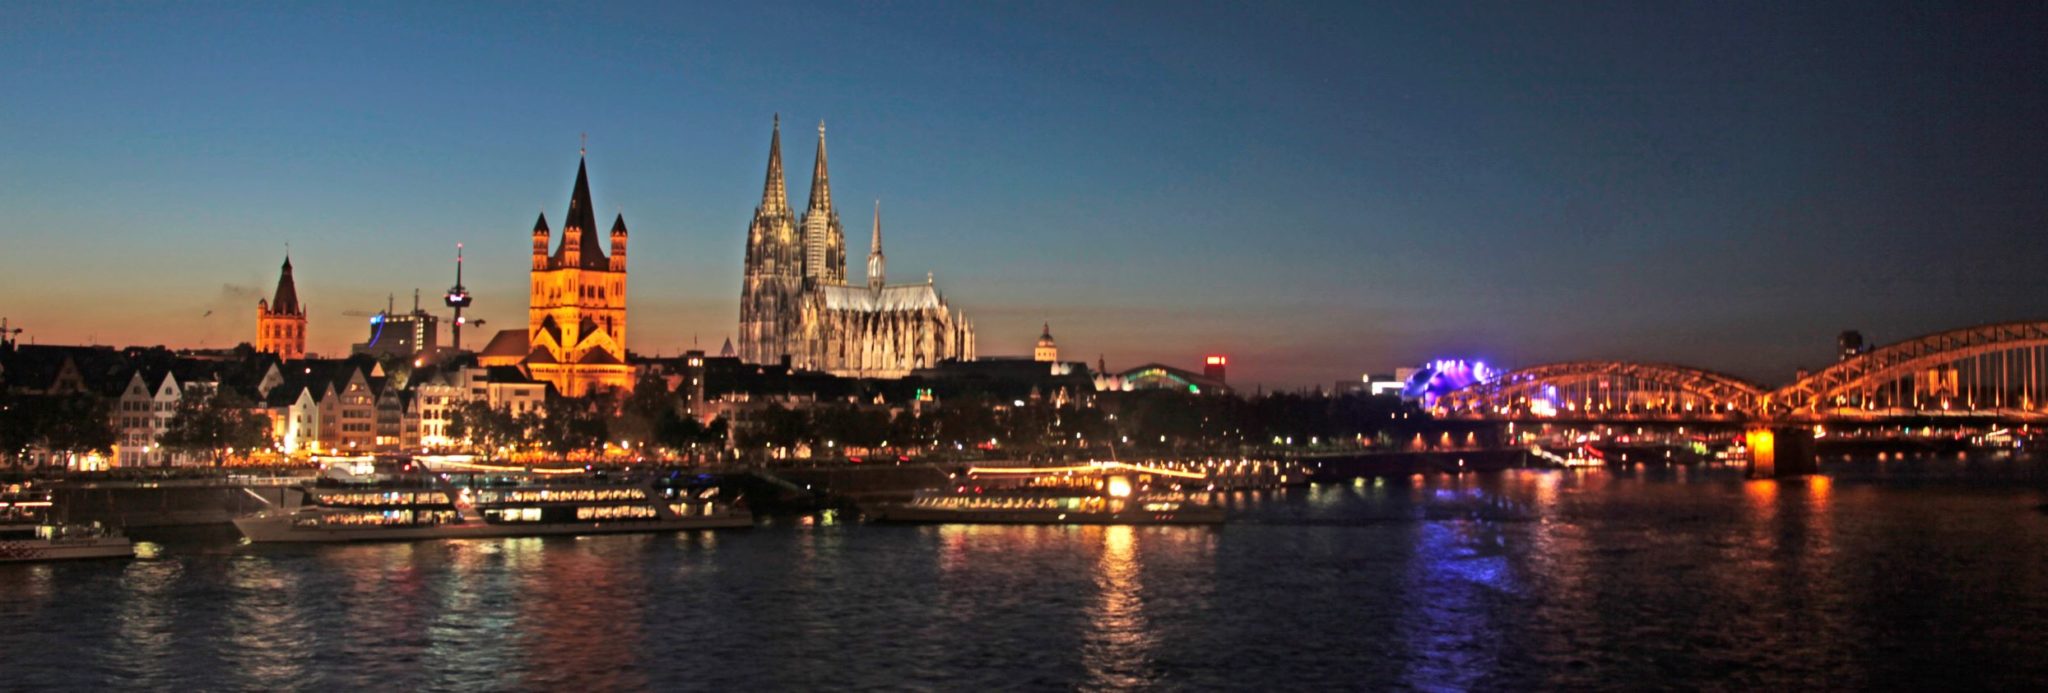 Europe_Rhine_Cologne_Sunset_Twilight_014 resized M